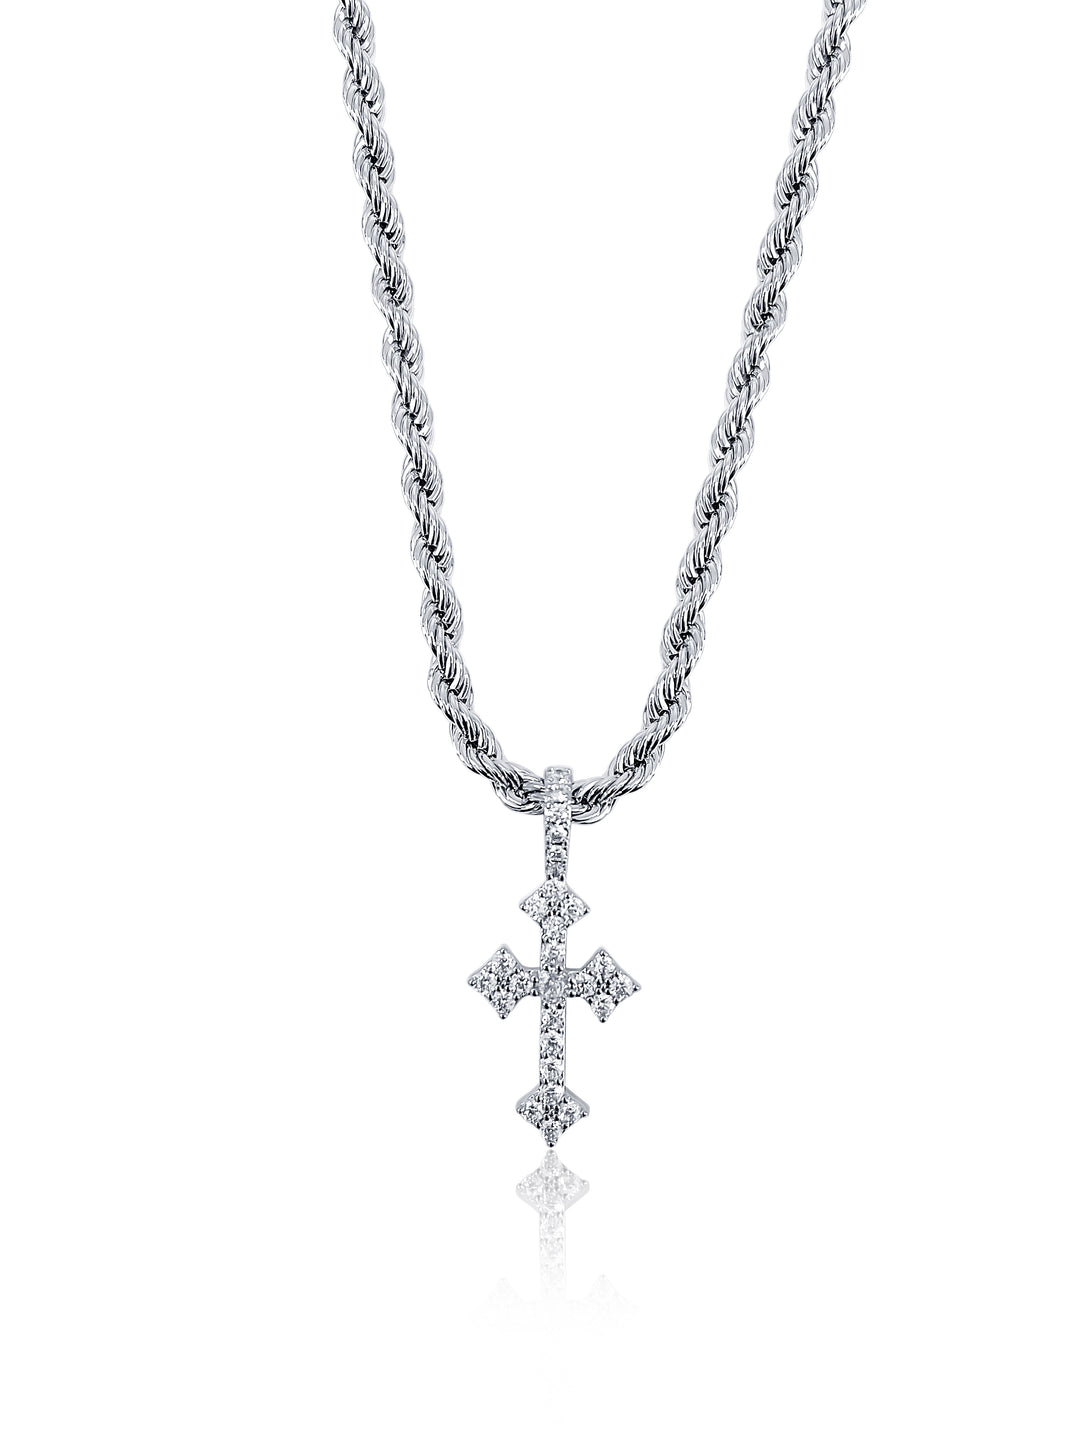 Simplicity Cross Necklace